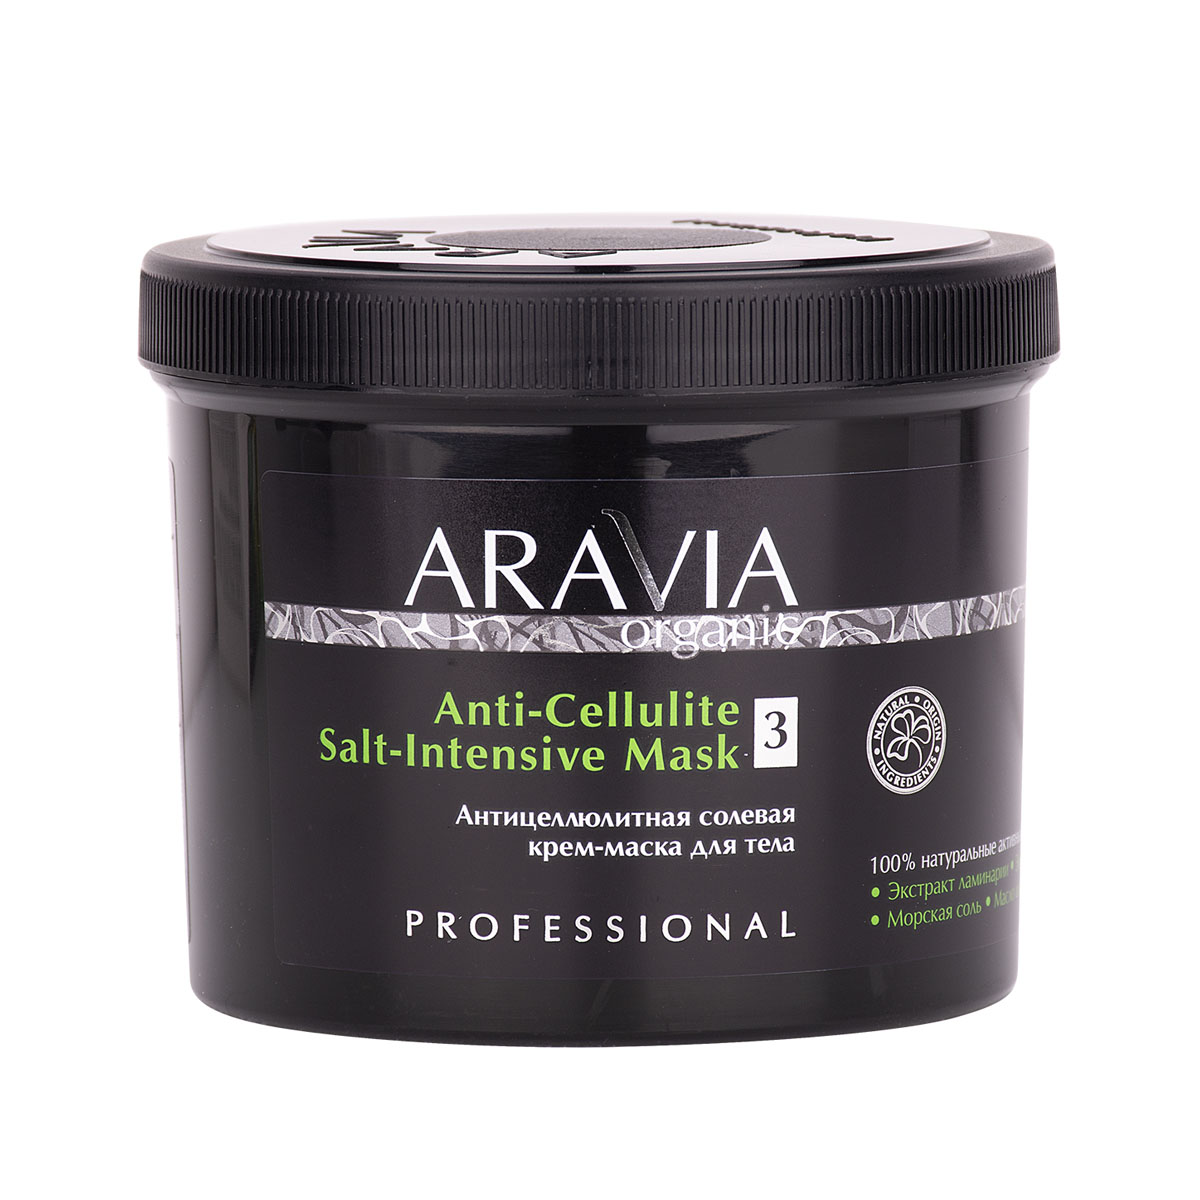 Купить Aravia Professional Антицеллюлитная солевая крем-маска для тела, 550 мл (Aravia Professional, Aravia Organic), Россия